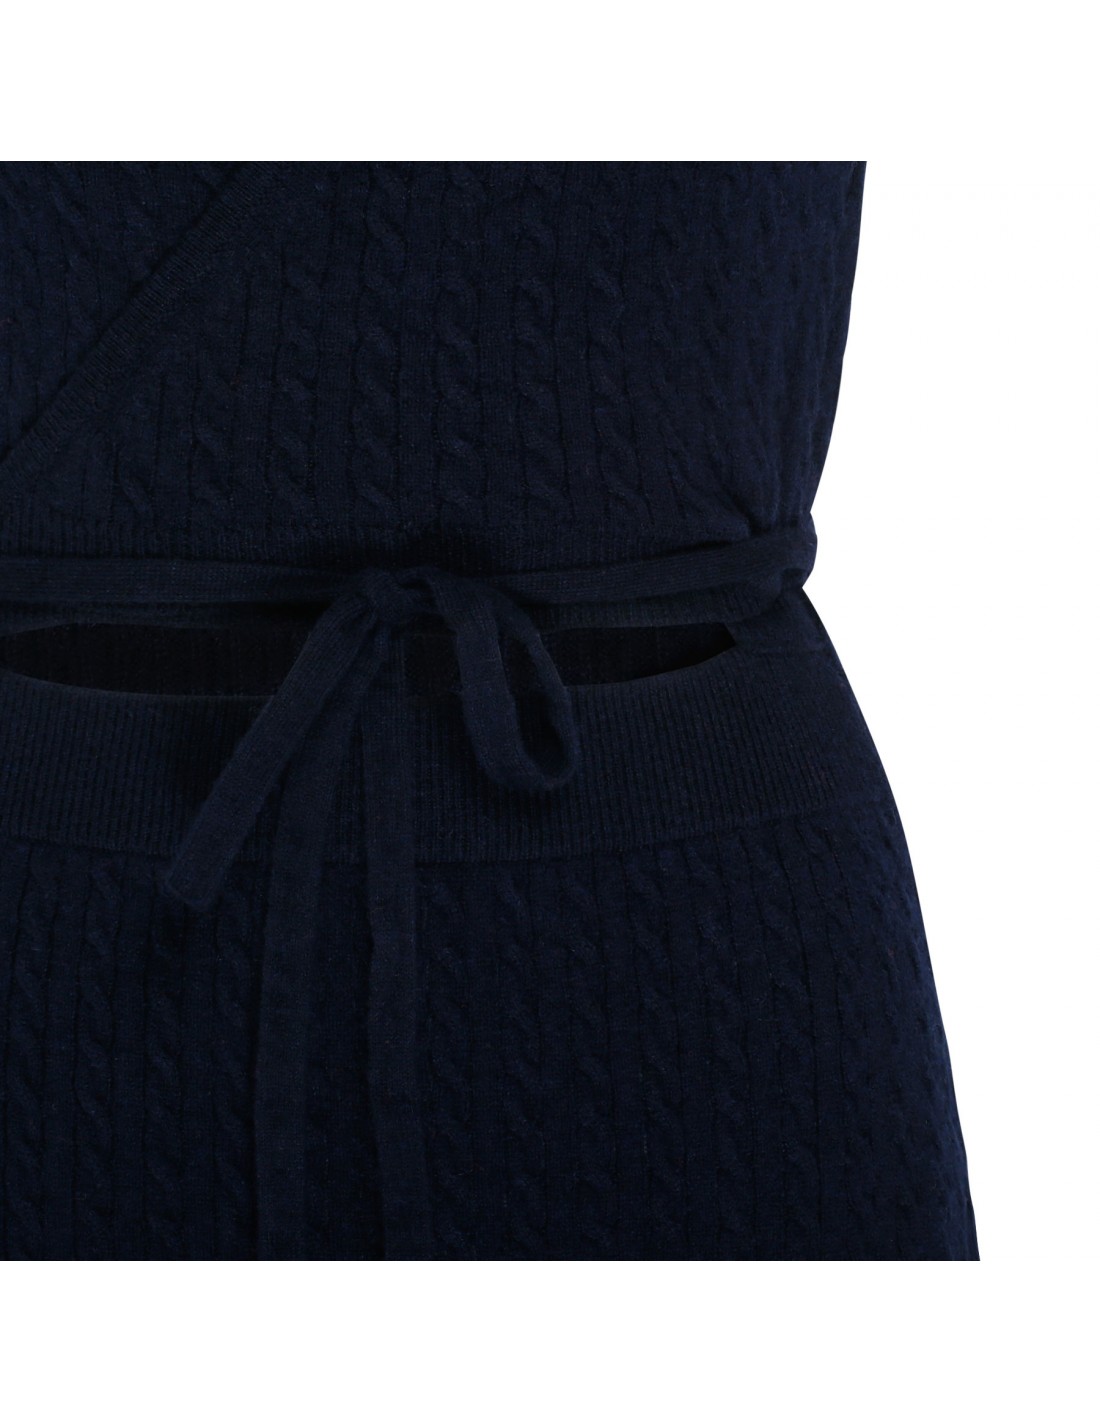 Black cable-knit wrap dress